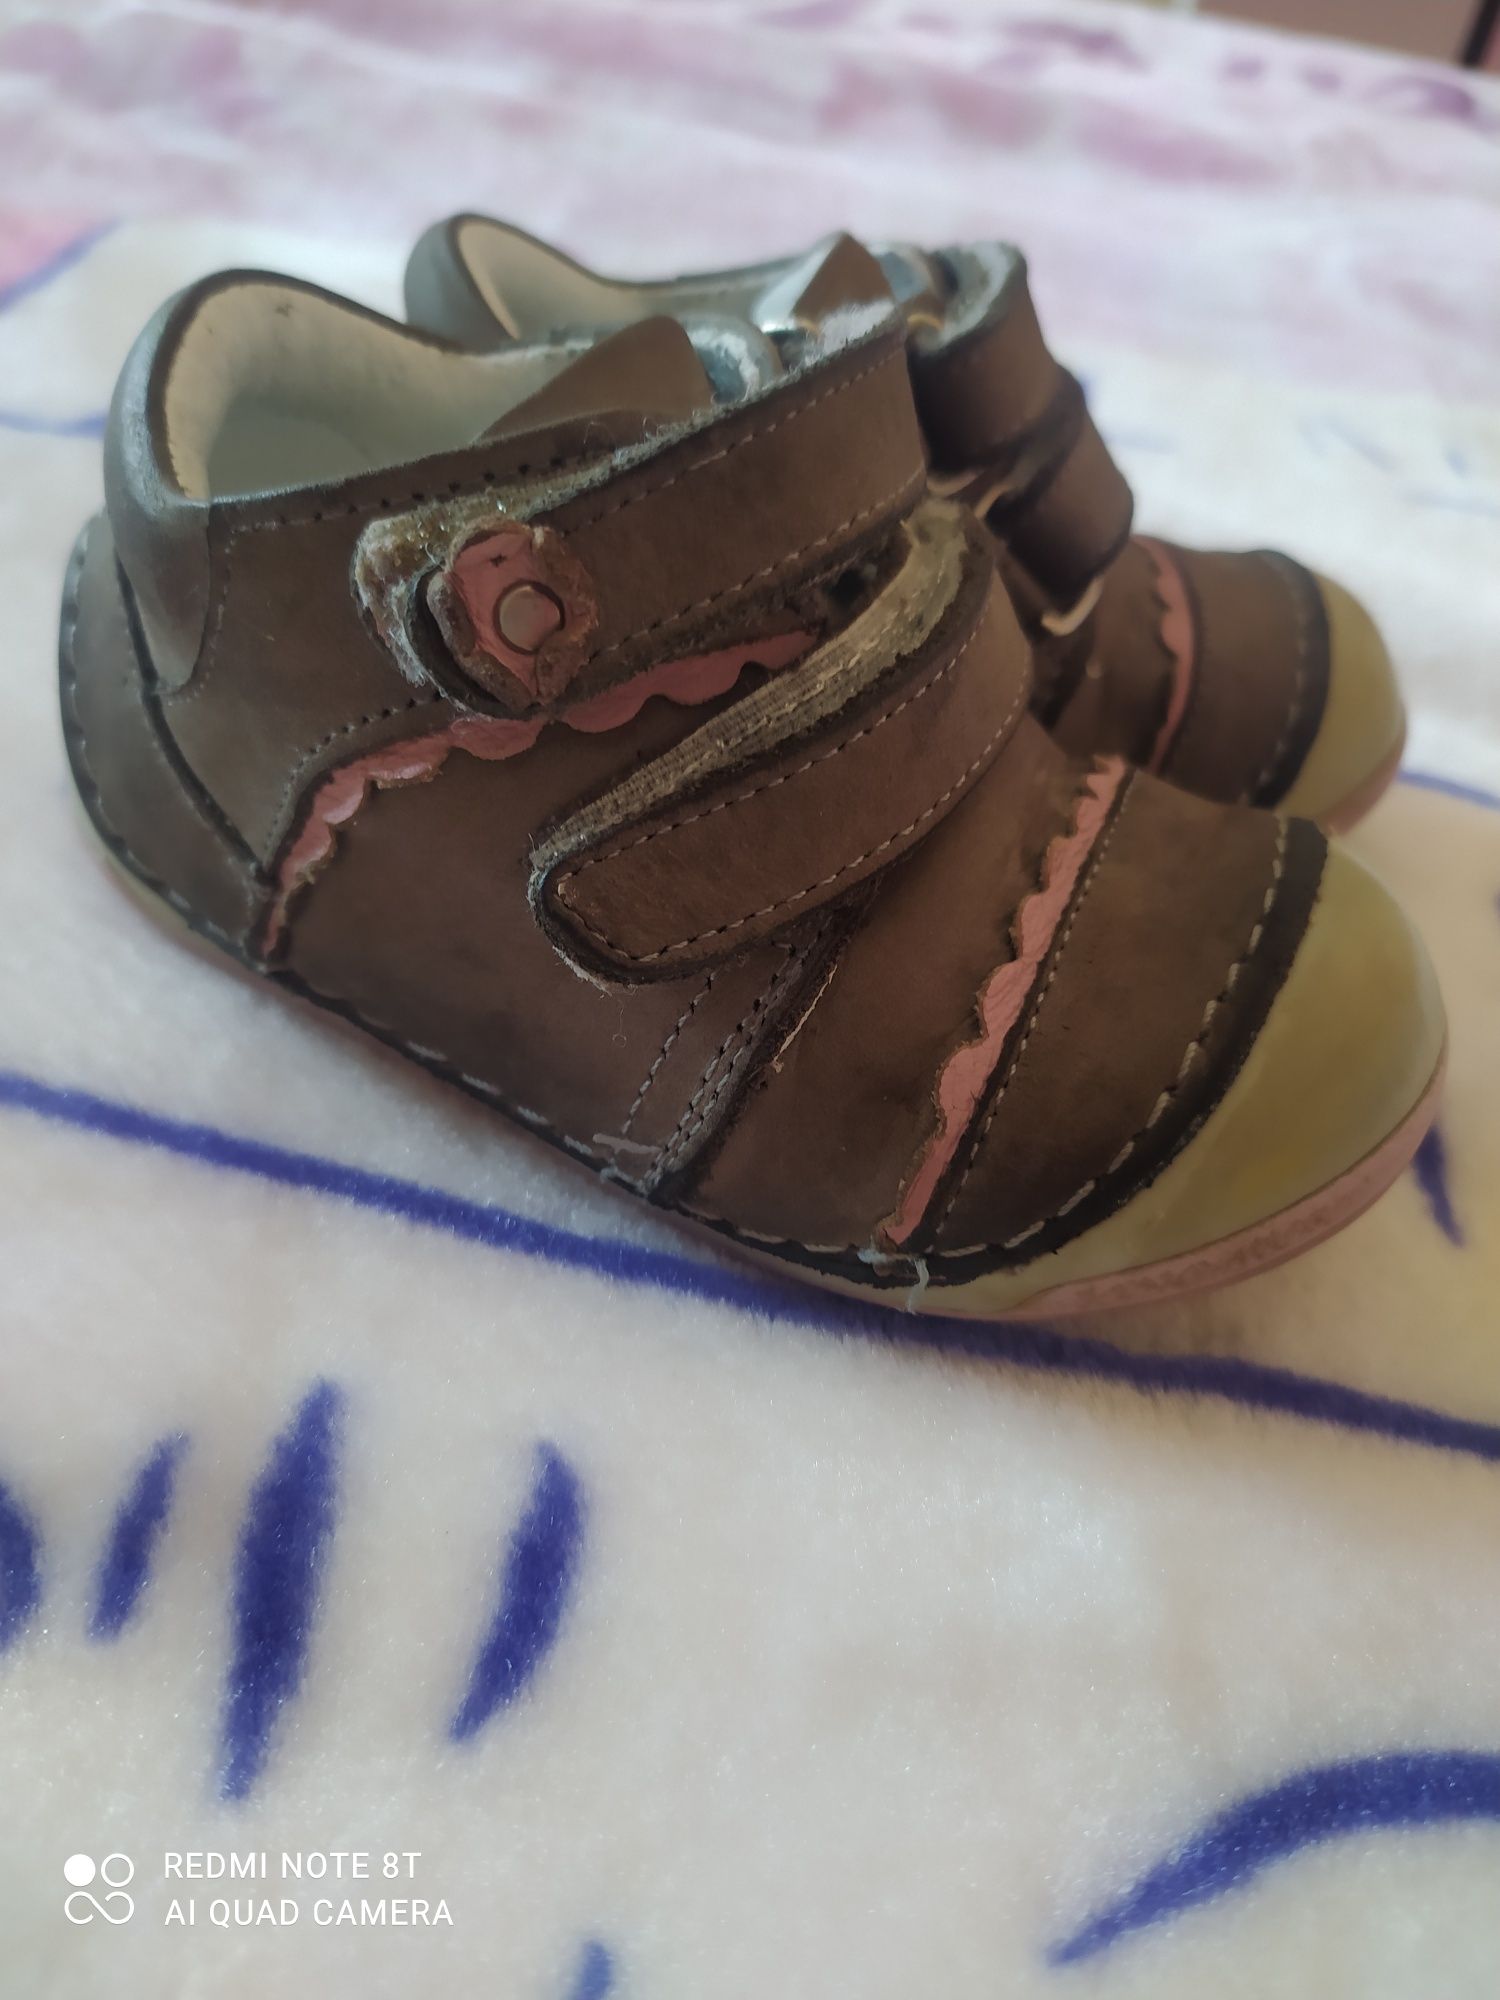 Бебешки обувки Понки